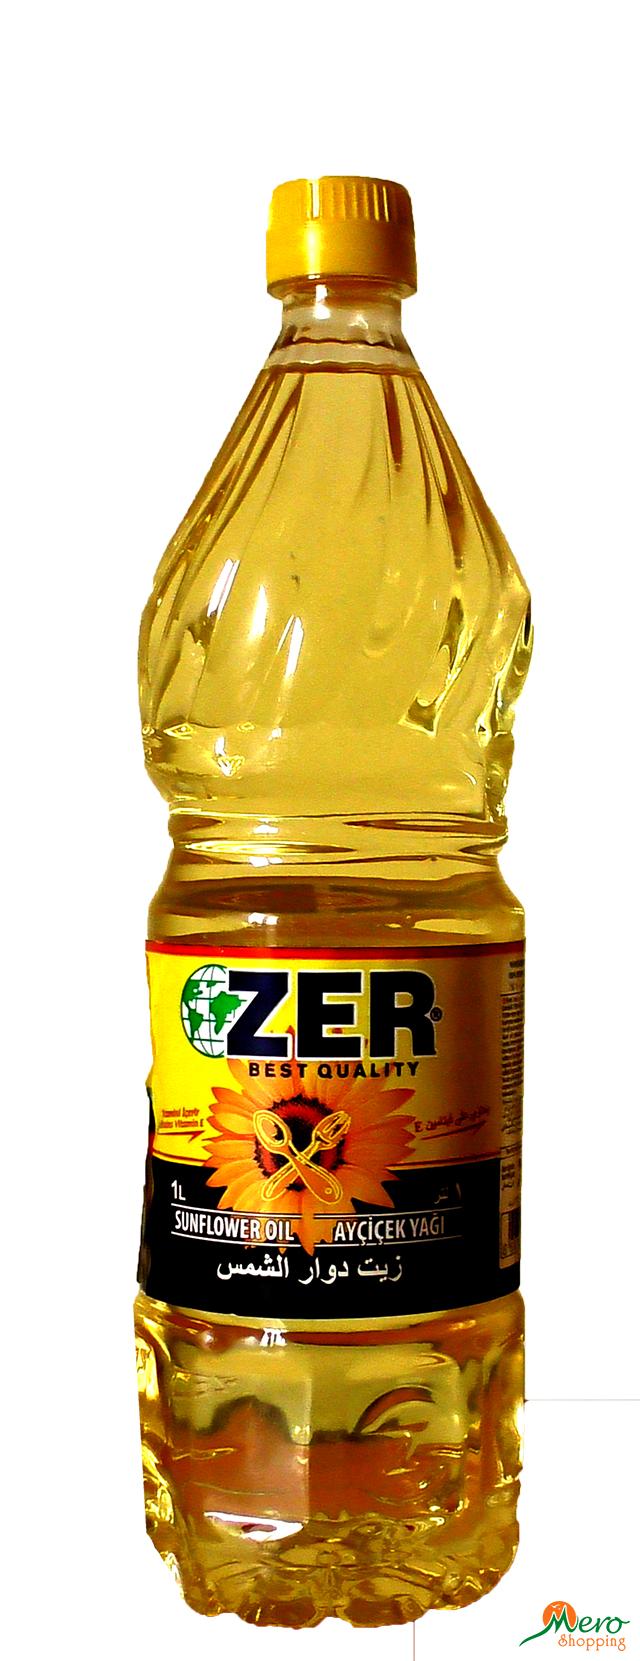 ZER Sunflower Oil 1 Ltr 